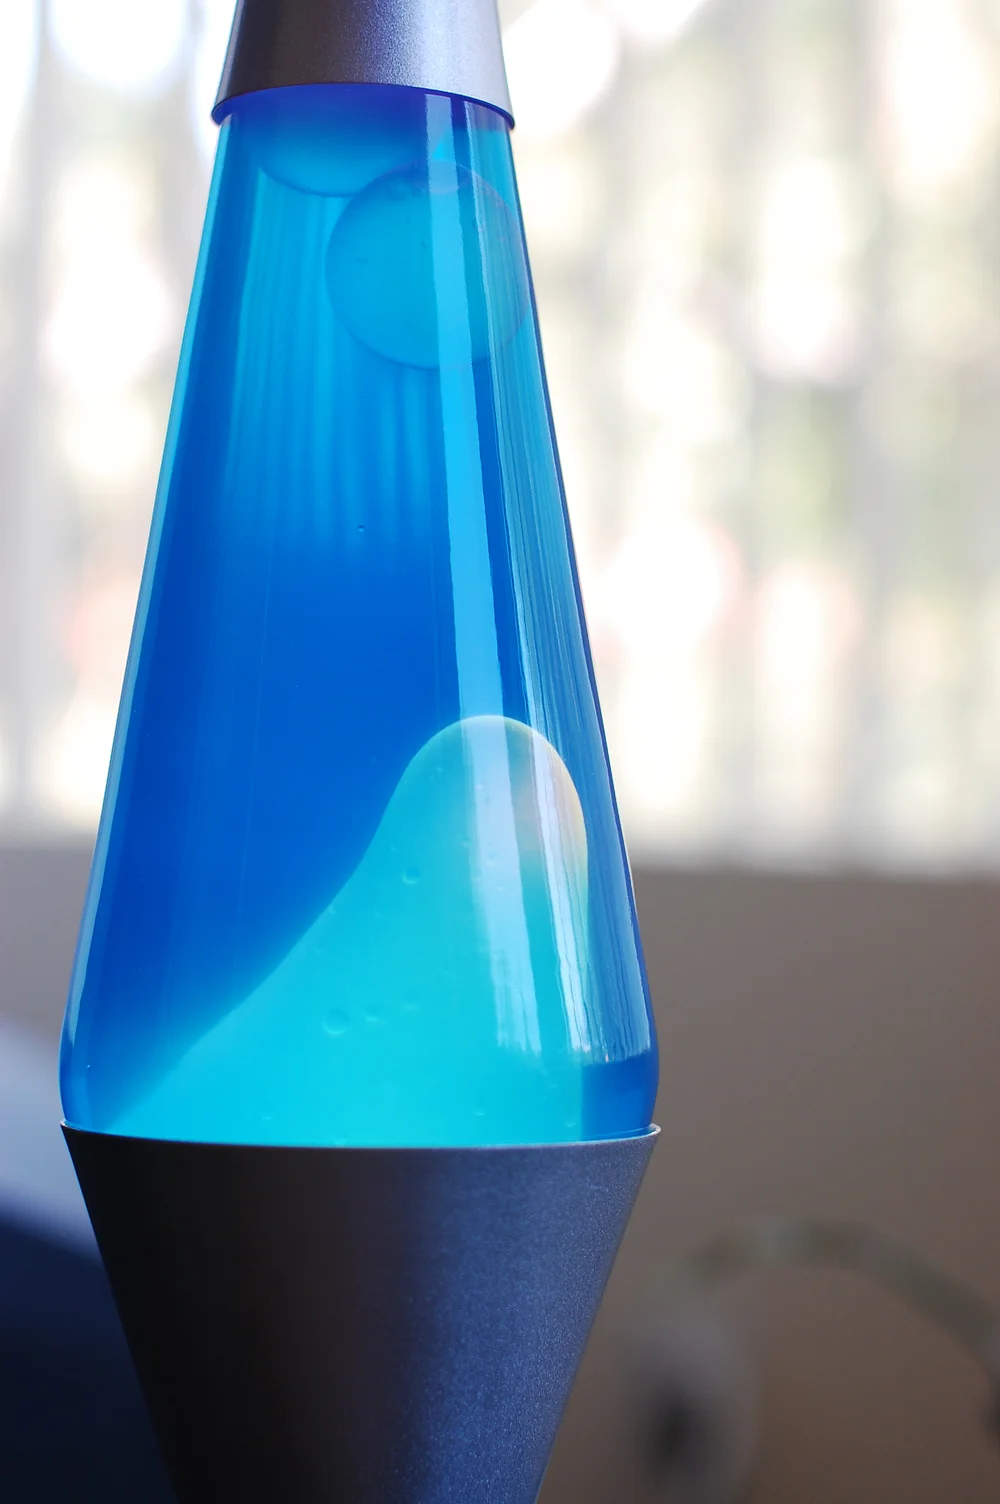 A blue lava lamp